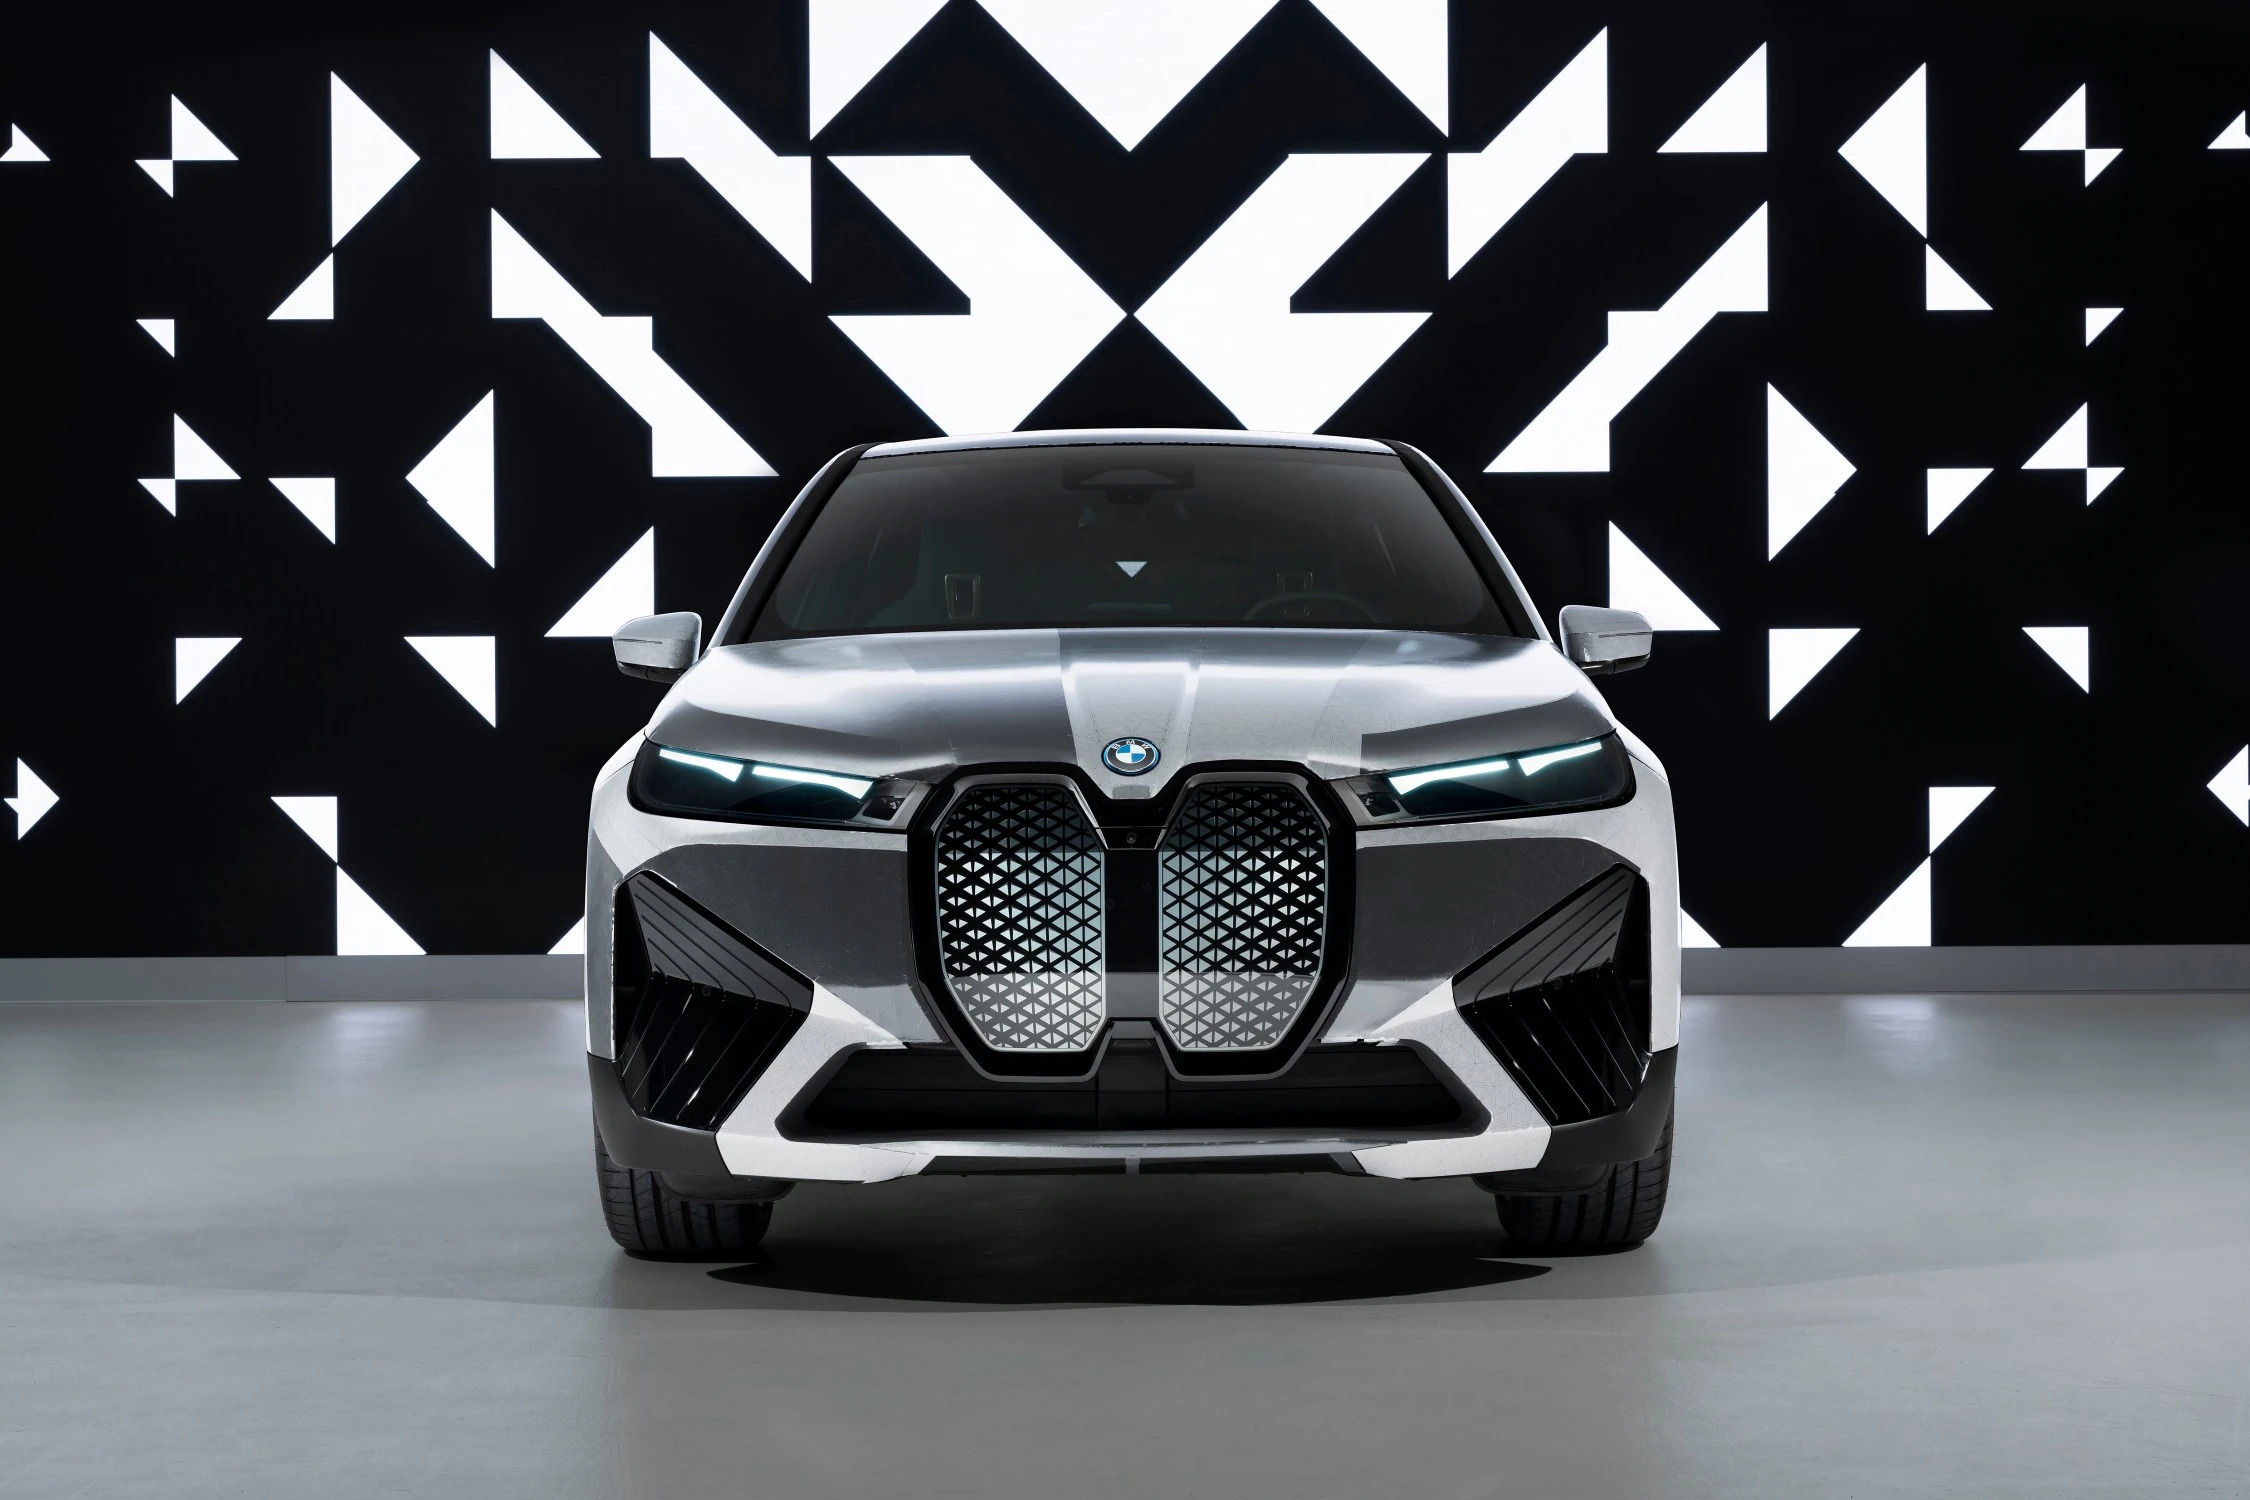 CES 2022: BMW's iX Flow is a monochrome chameleon on wheels